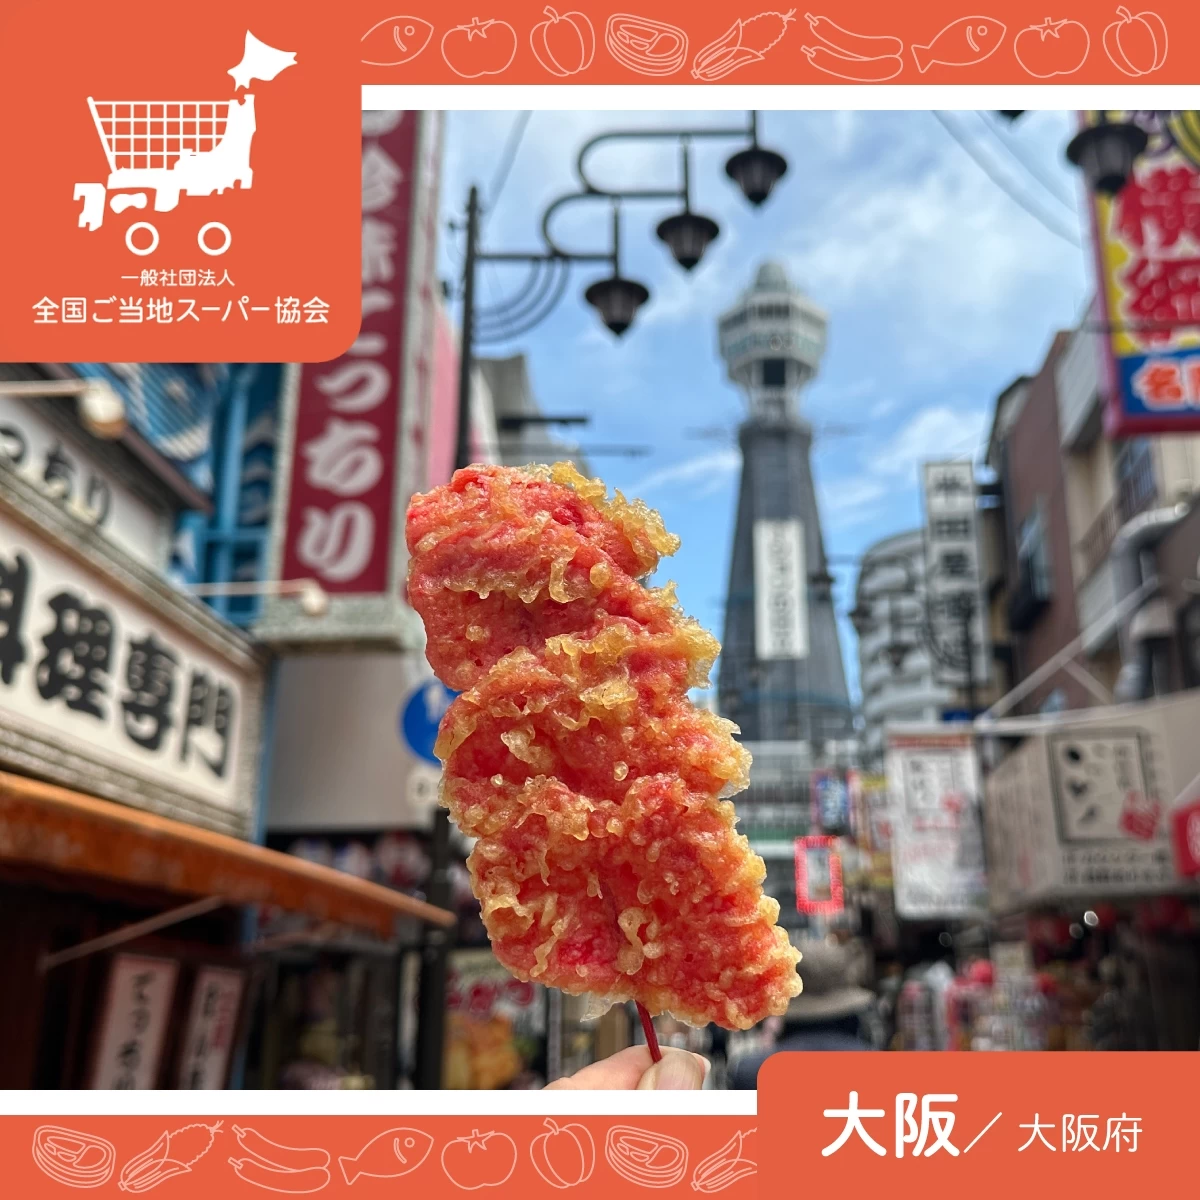 大阪のご当地スーパー玉出へ。黒門市場でグルメ食べ歩き女子旅